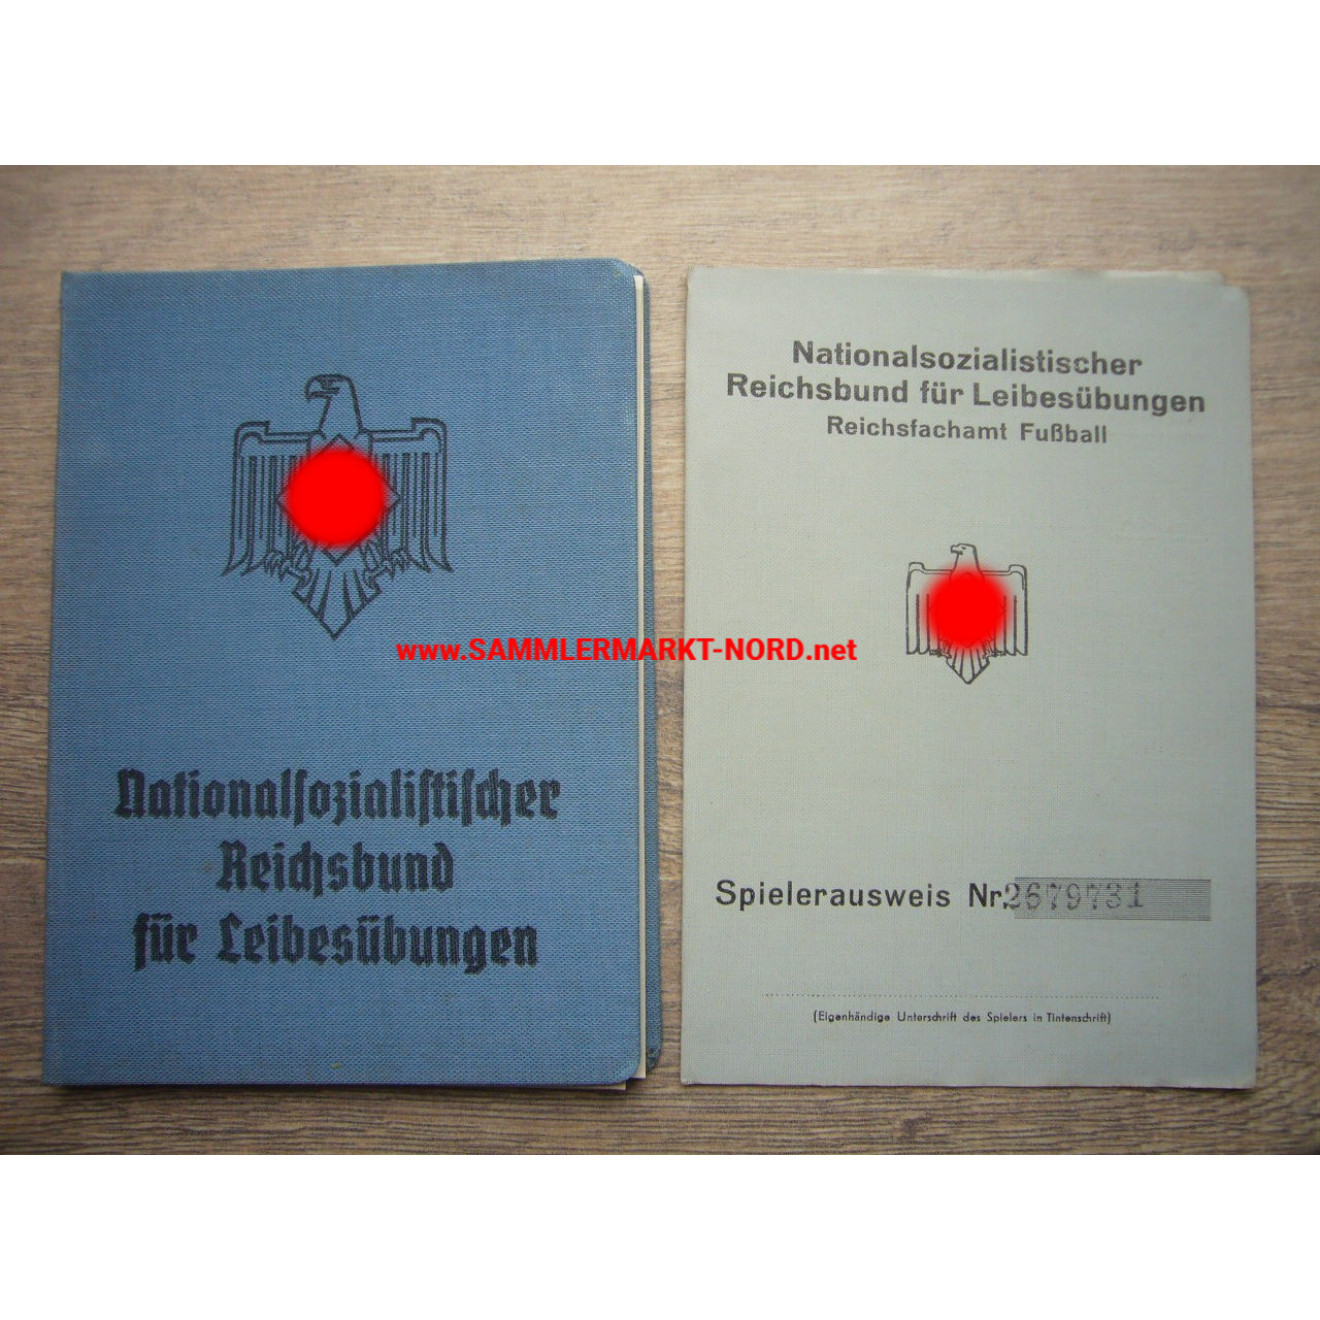 DRL Reichsbund für Leibesübungen - Mitgliedsbuch & Fussball Spielerausweis